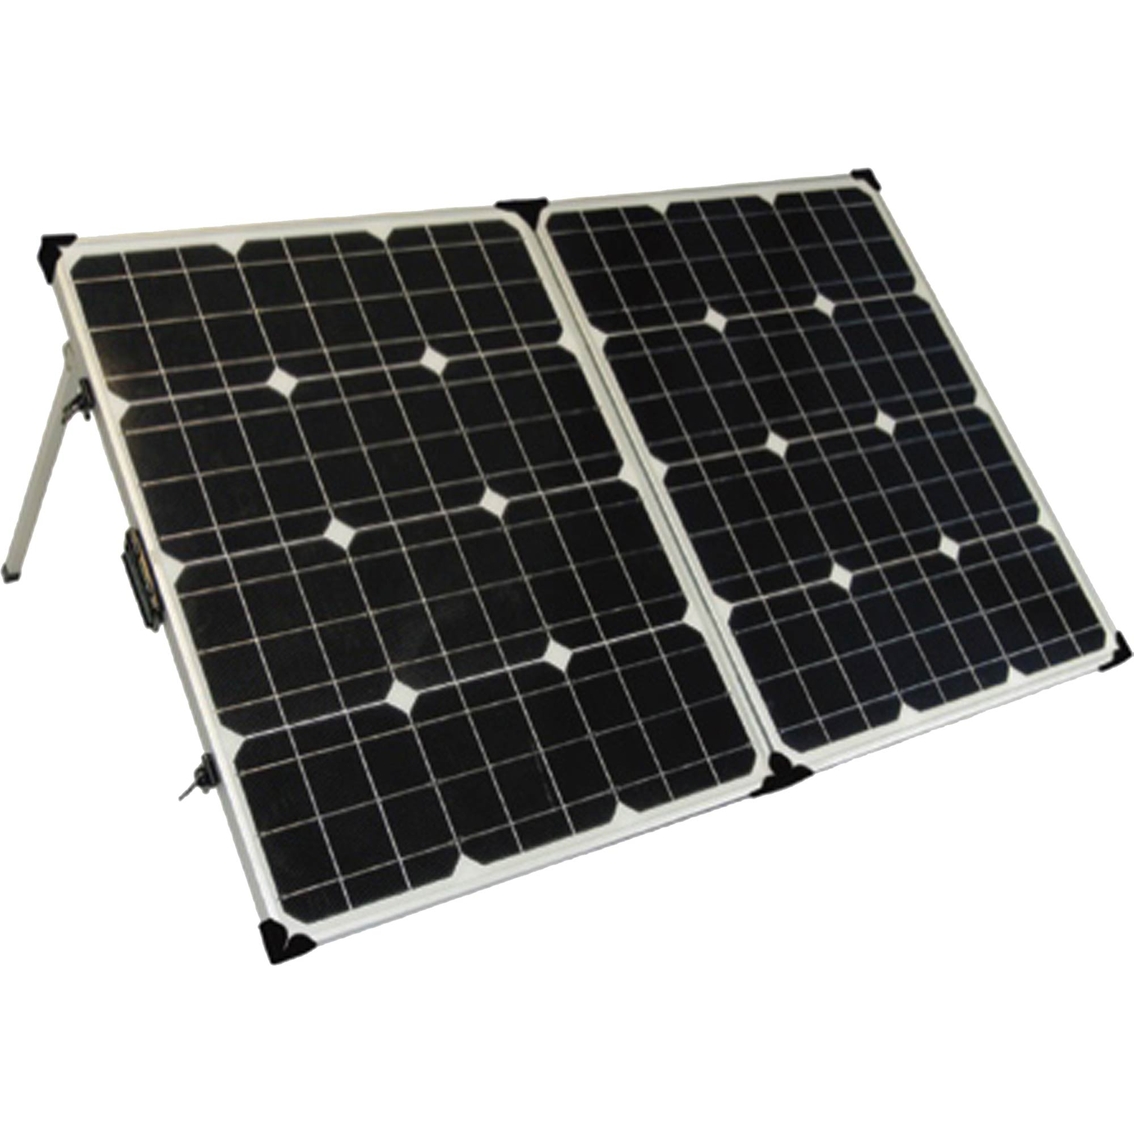 Lion Energy SPK Solar Power Kit - Image 2 of 4